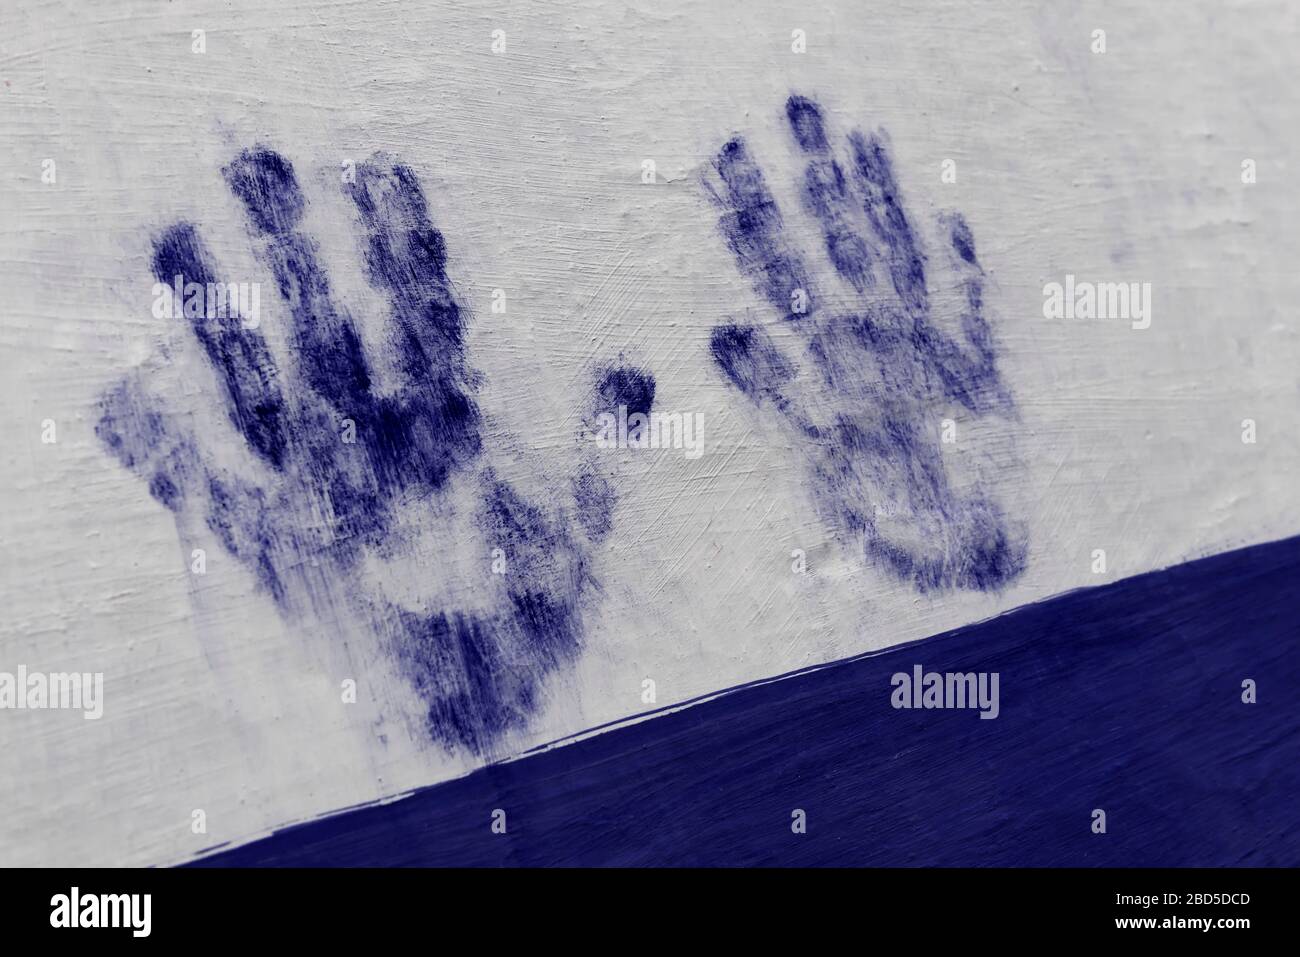 Estampado de manos pintado en azul en una pared blanca. Mano humana, palma, dedos. Imagen conceptual. Foto de stock